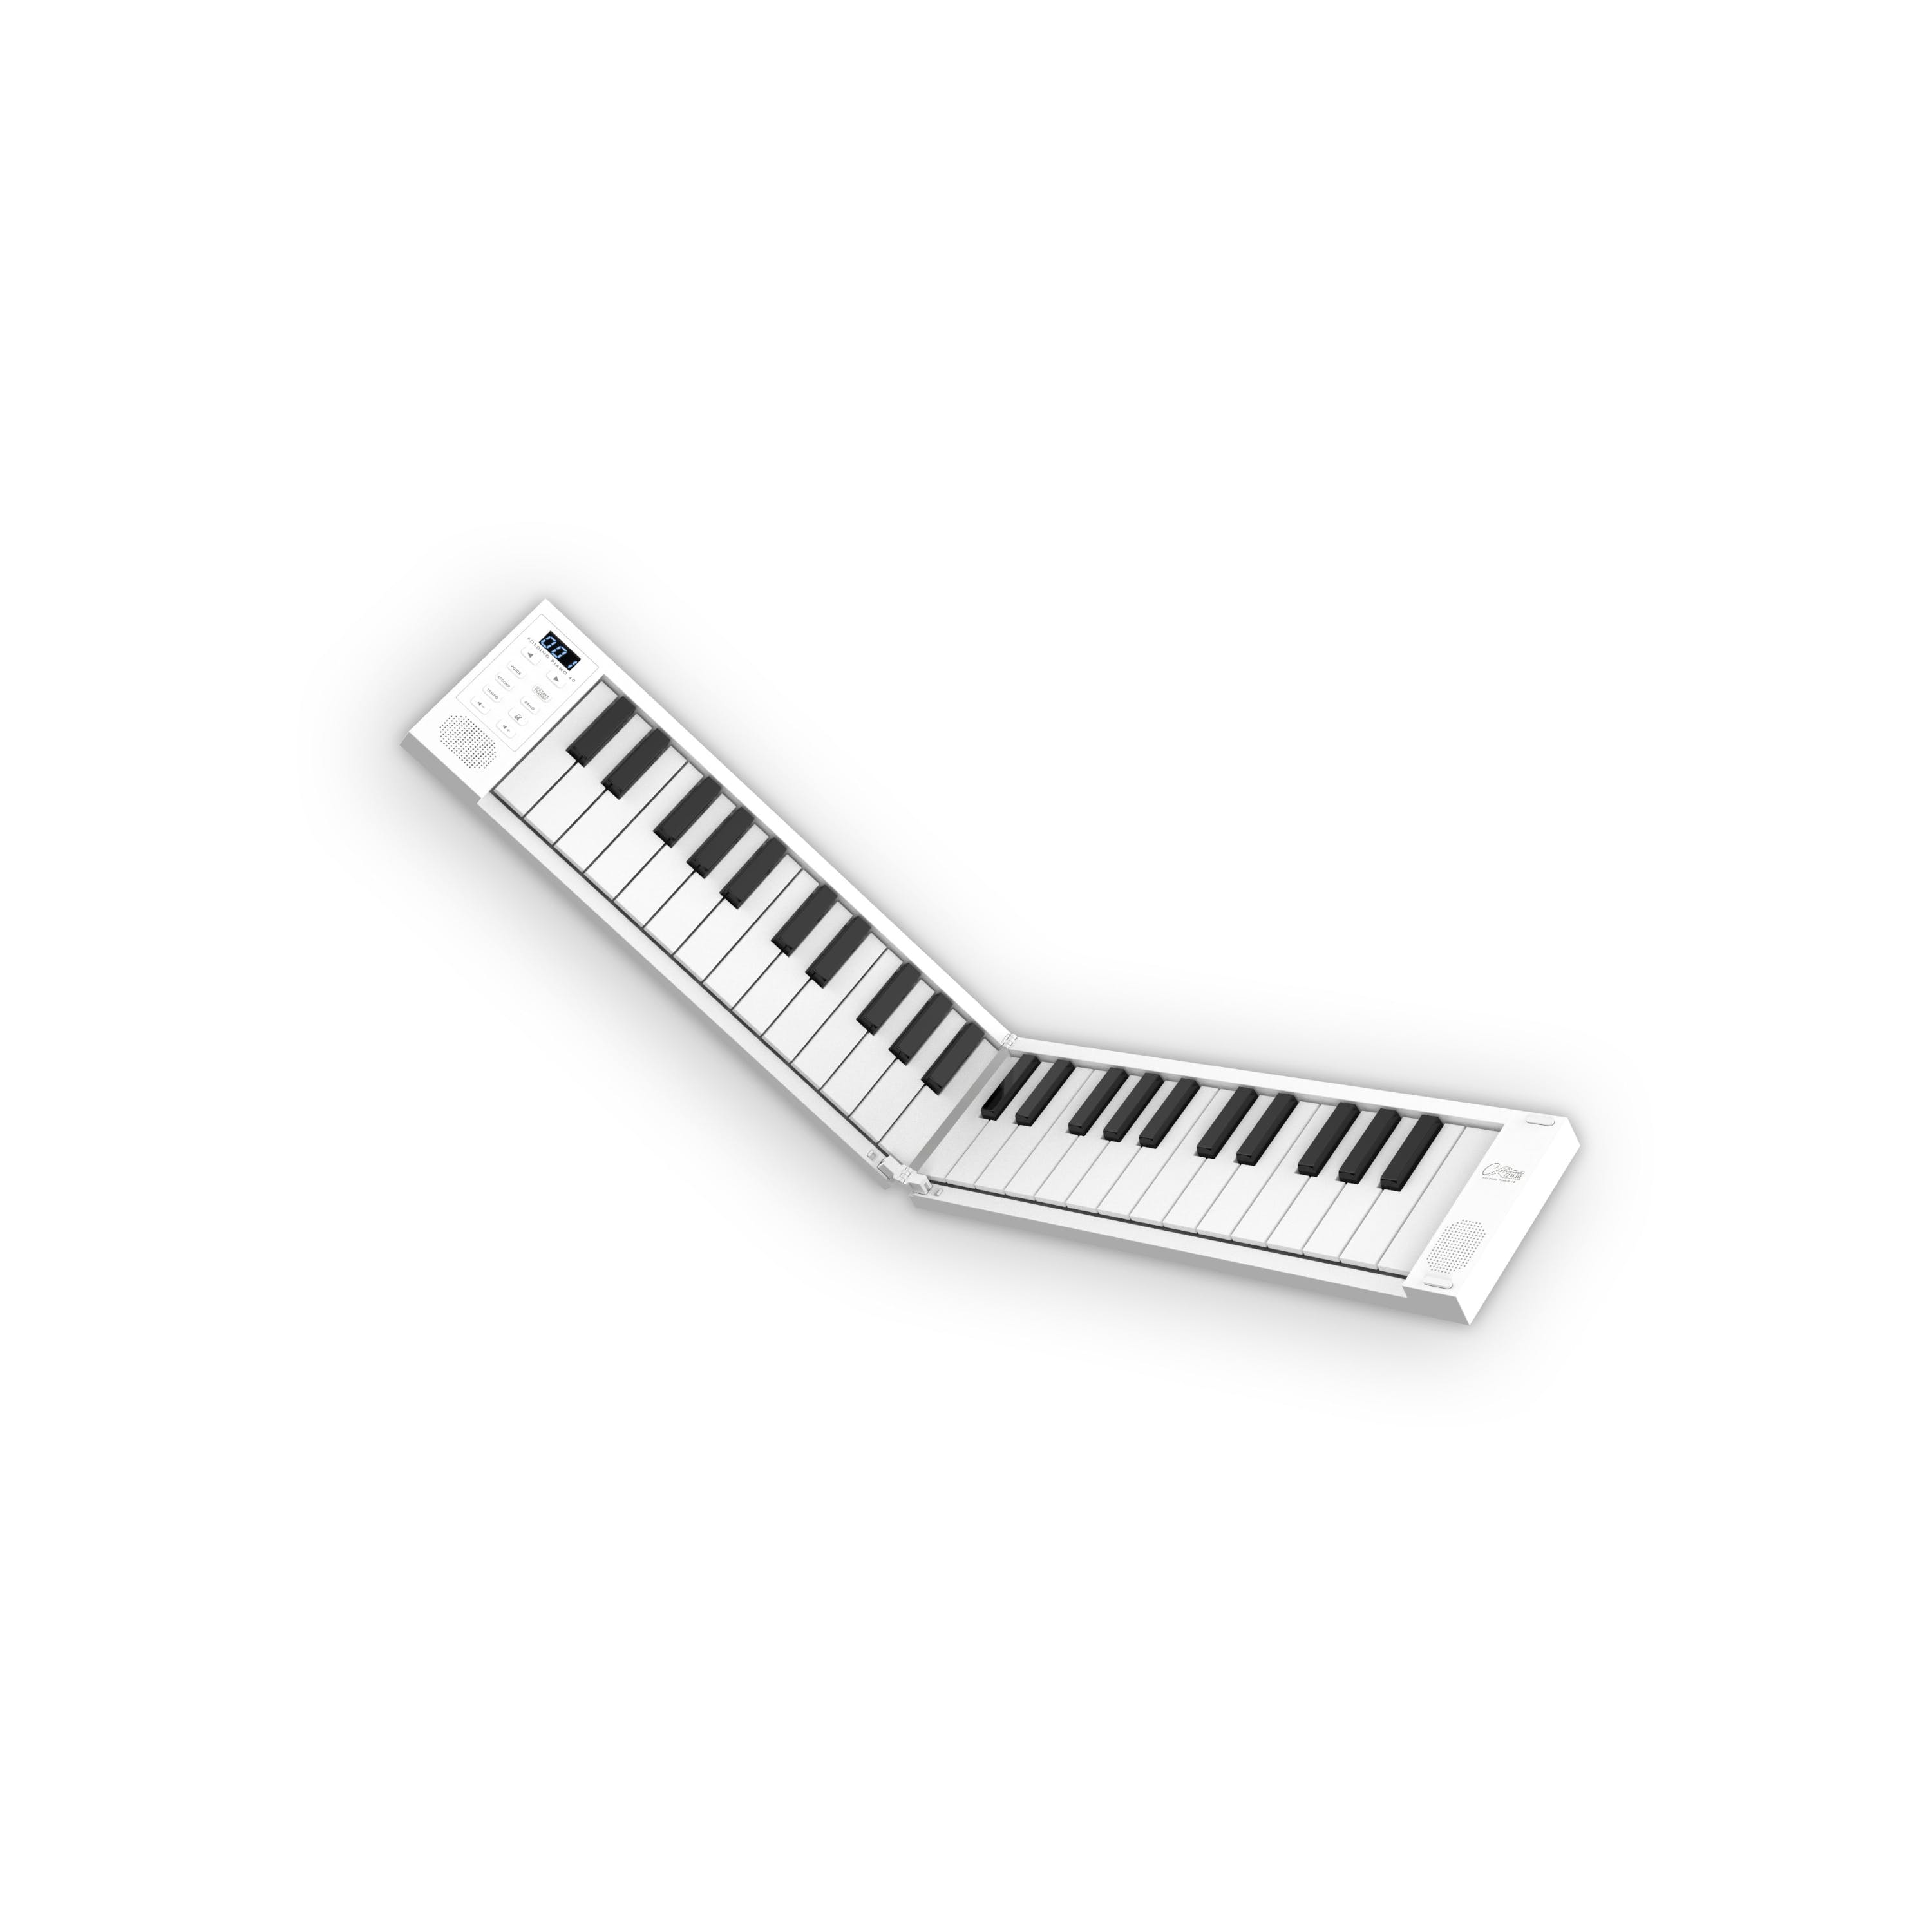 Фортепиано складное Blackstar CARRY-ON FOLDING PIANO 49